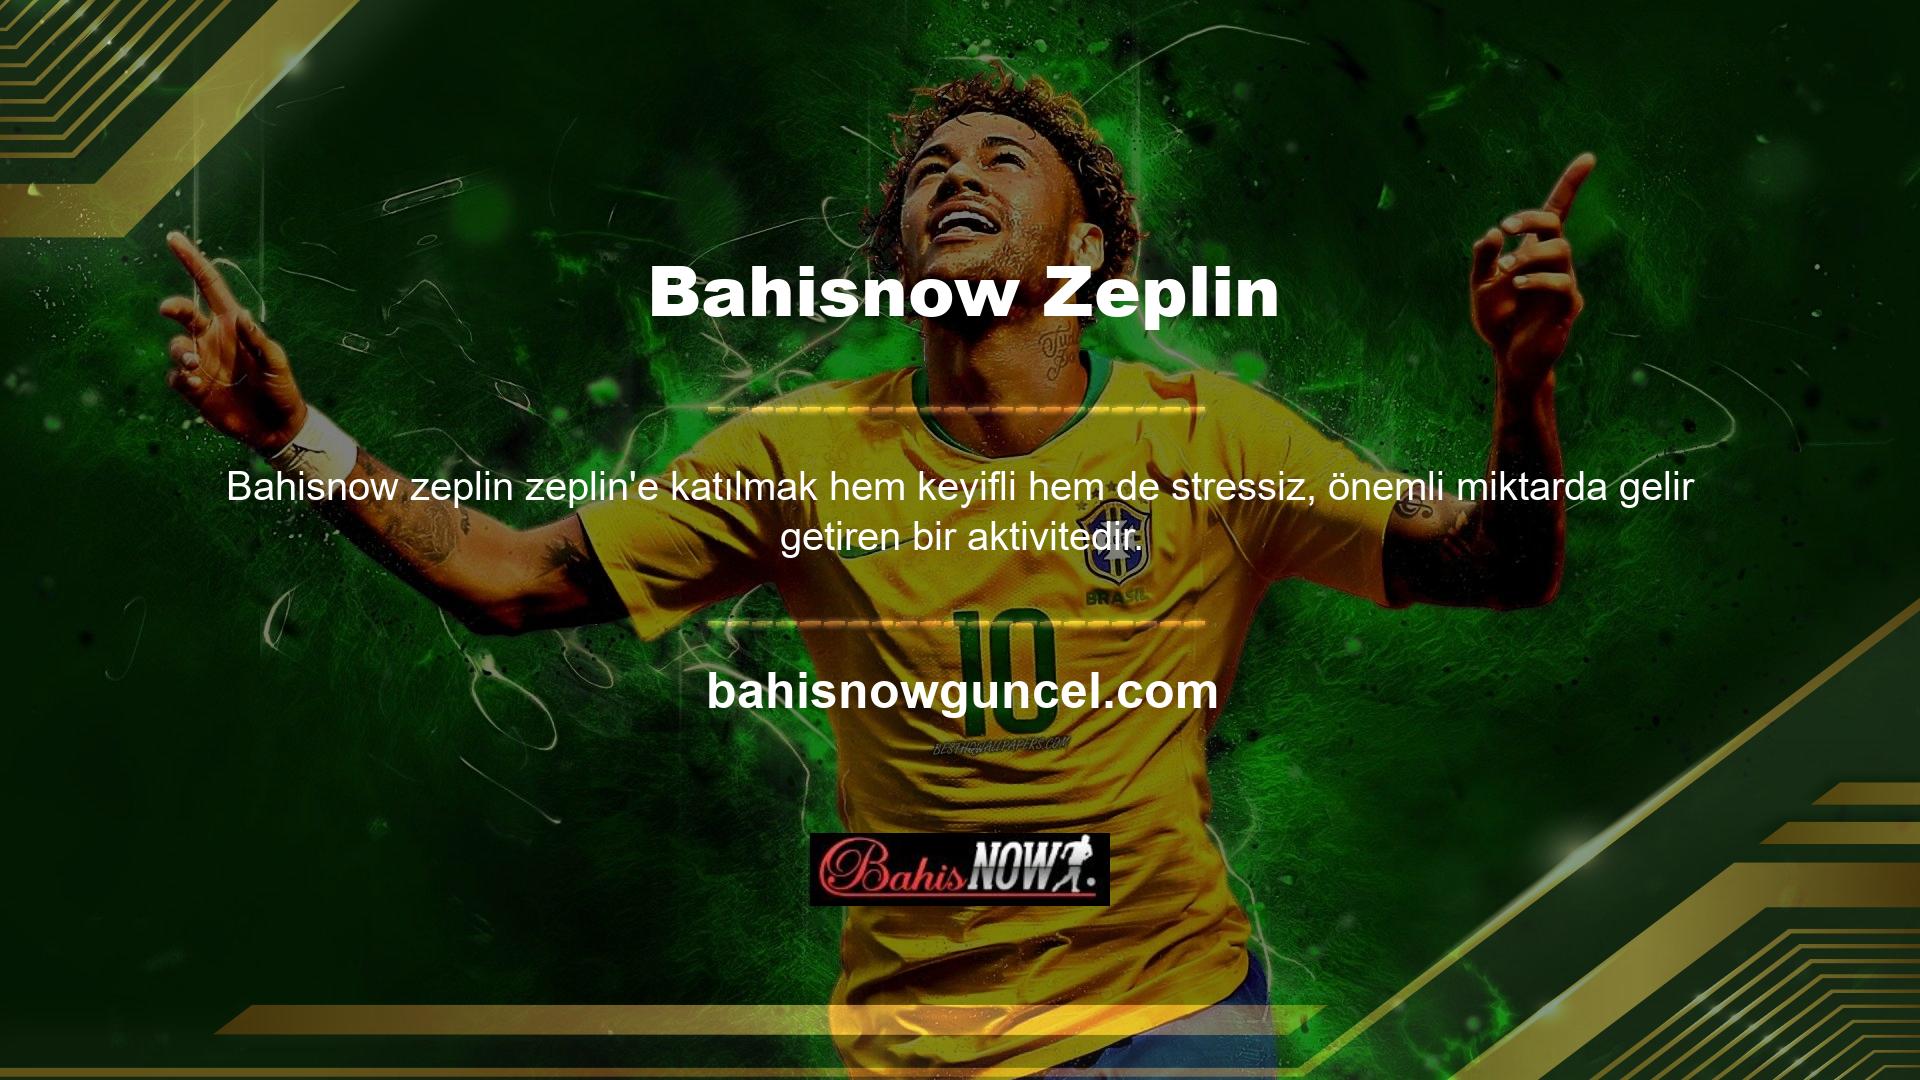 Bahisnow Zeplin, risk almaya ve hızlı bir şekilde yüksek kar elde etmeye istekli bireylerin oynayabileceği bir oyundur